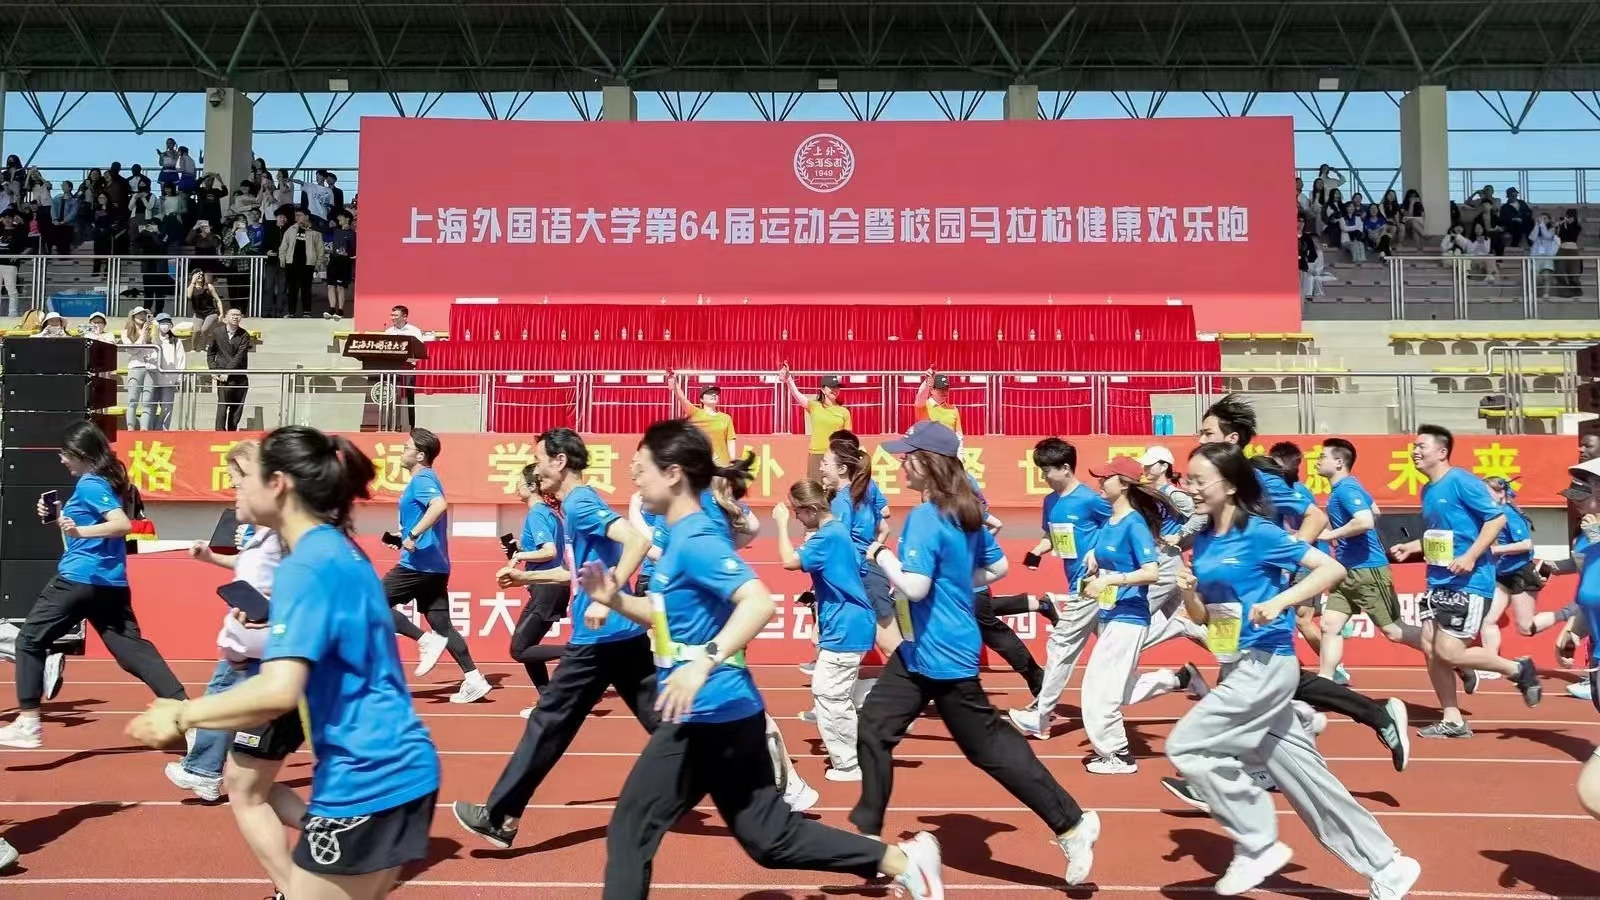 上海外国语大学举行第六十四届运动会暨校园马拉松健康欢乐跑